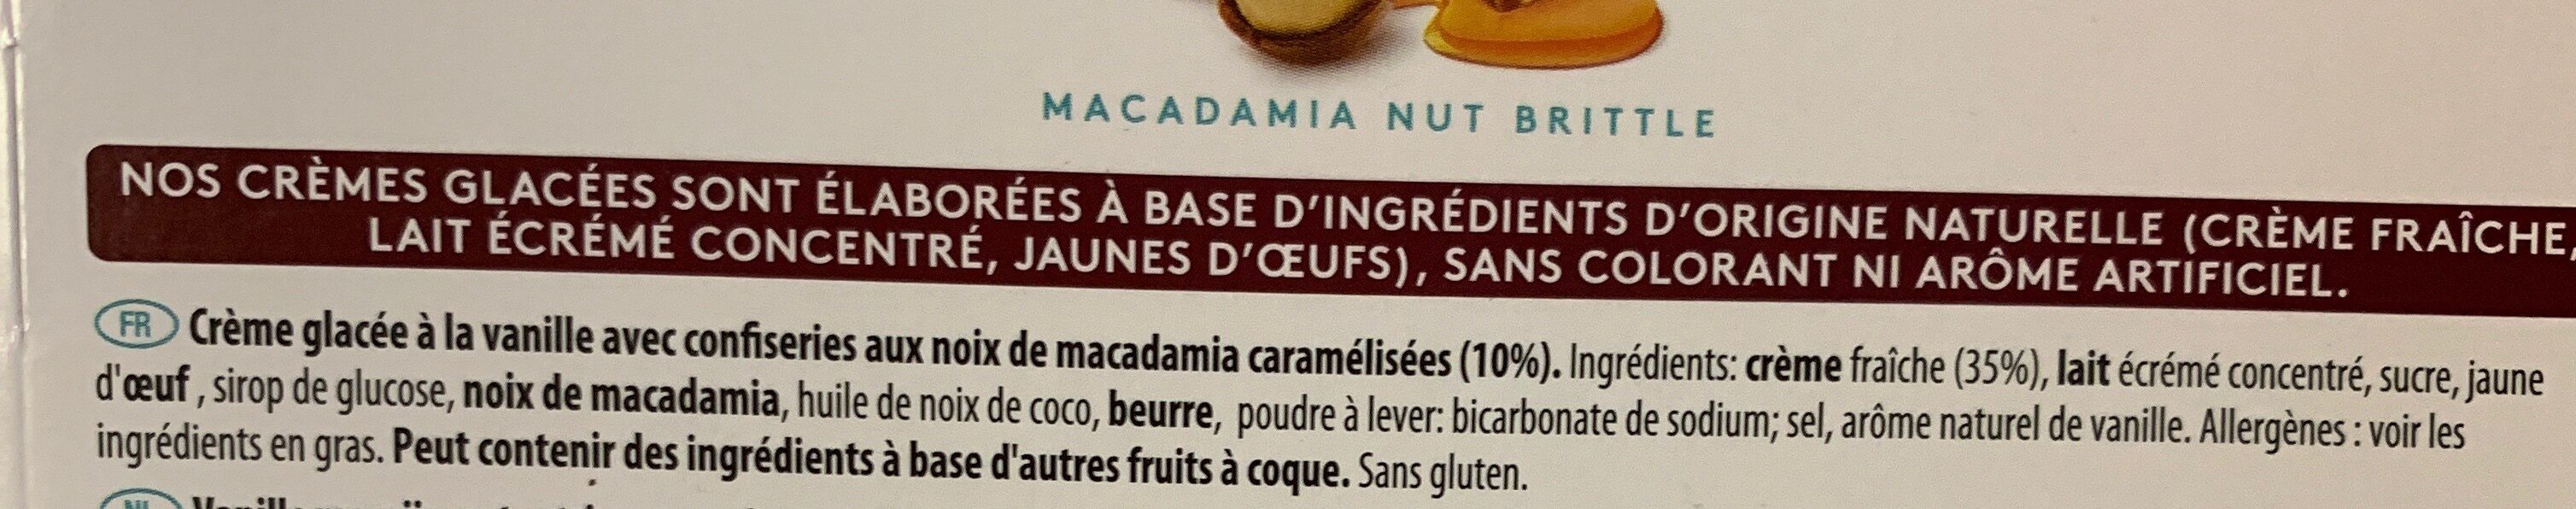 Macadamia nut brittle mini cups - Ingredienser - fr